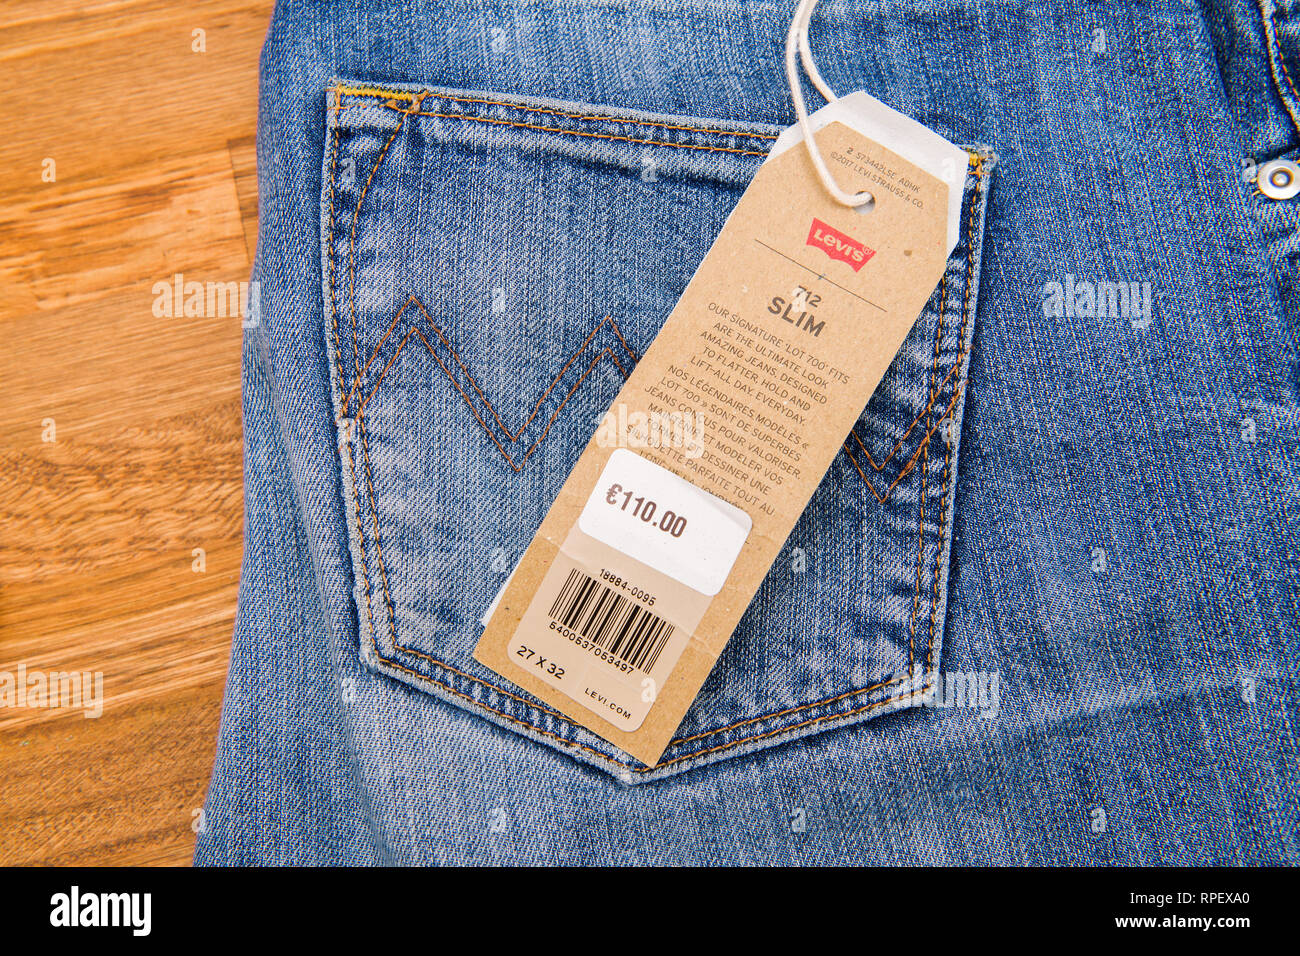 Parigi, Francia - Jan 2, 2018: Nuovo Jeans con prezzo di etichetta  fabbricato dalla Levi's collocato sul naturale tavolo in legno - modello  Soft vintage prezzo 110 euro Foto stock - Alamy